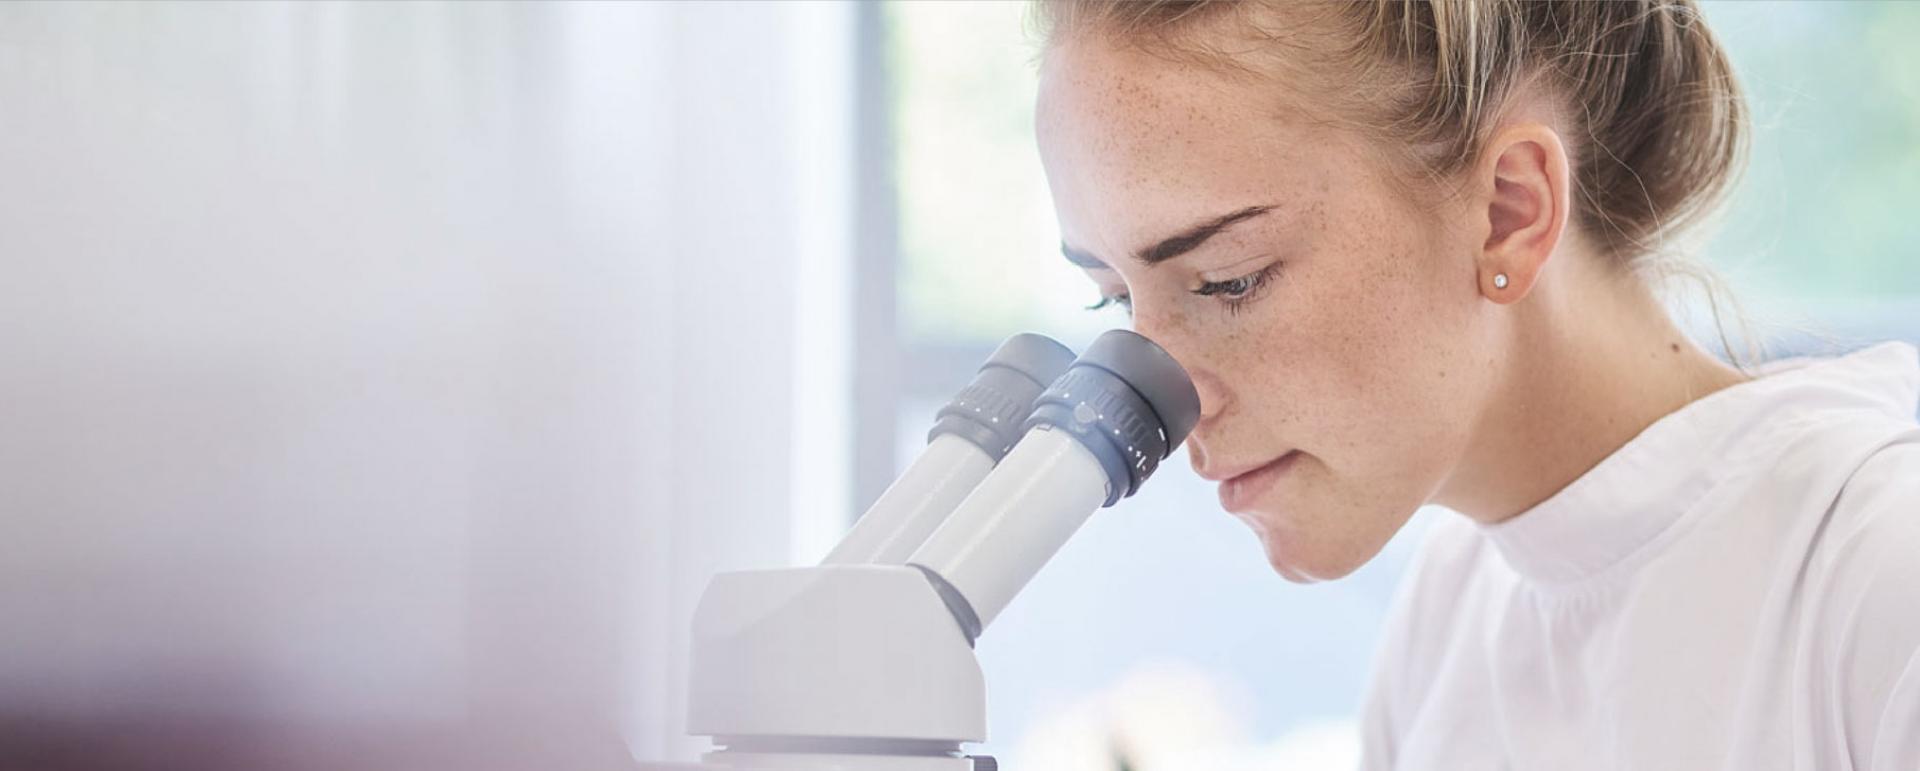 kvinnelig student som ser inn i et mikroskop